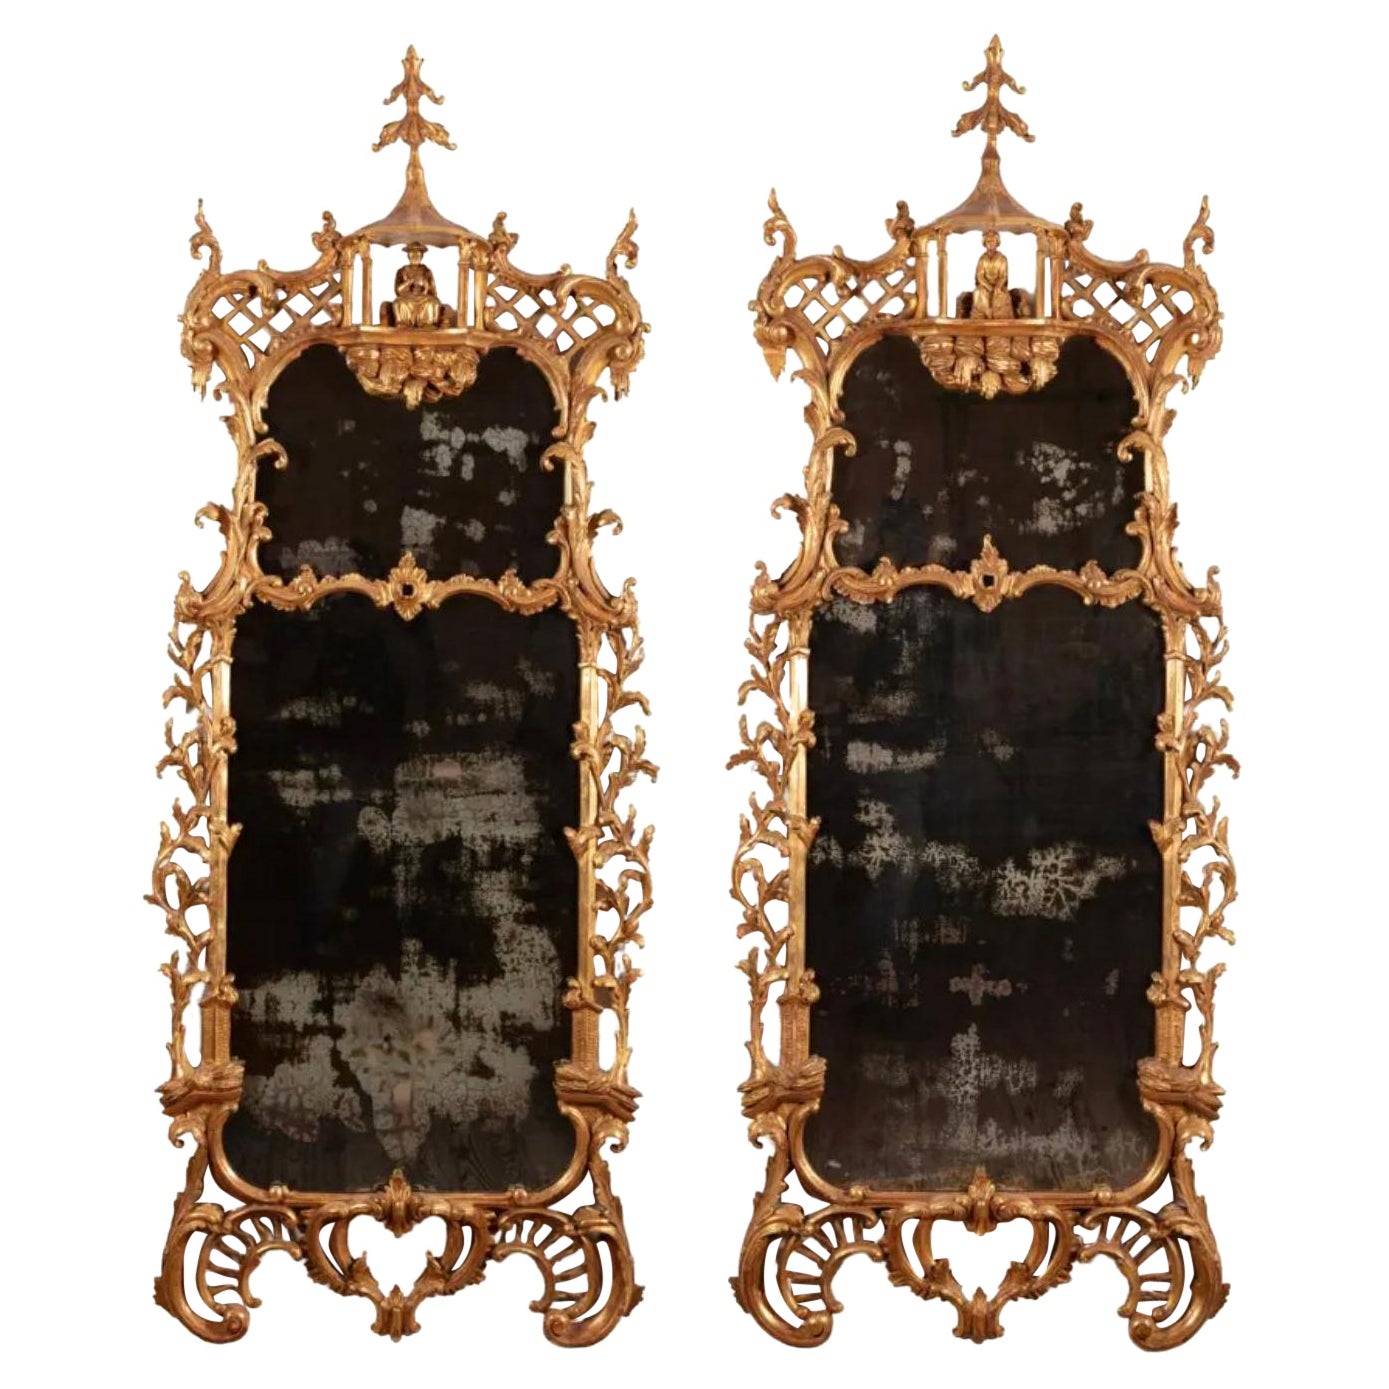 Incroyable paire de miroirs Chippendale chinois de style géorgien du 18ème siècle de Florian Papp